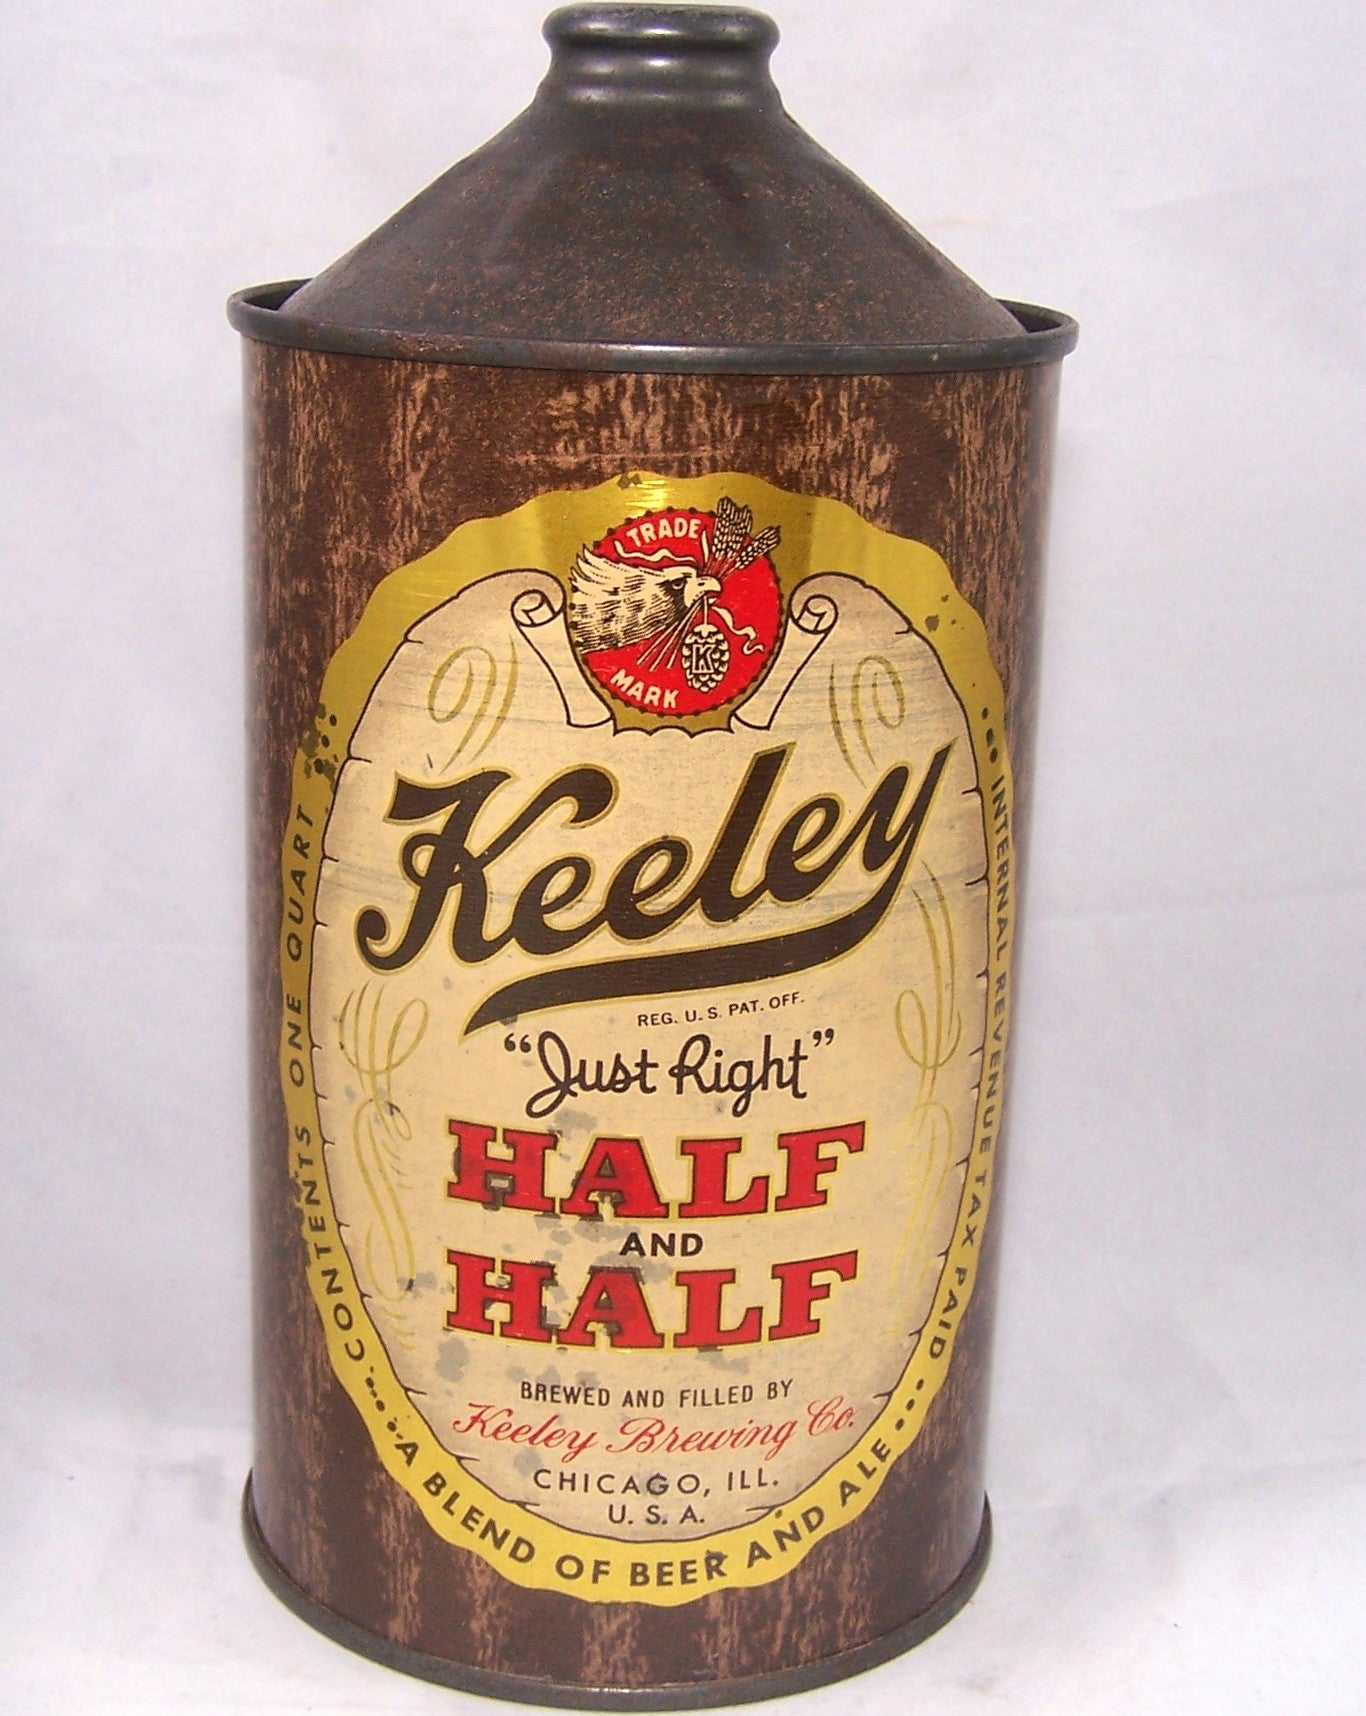 Keeley Half and Half, USBC 212-18, Grade 1/1-sold 10/30/16